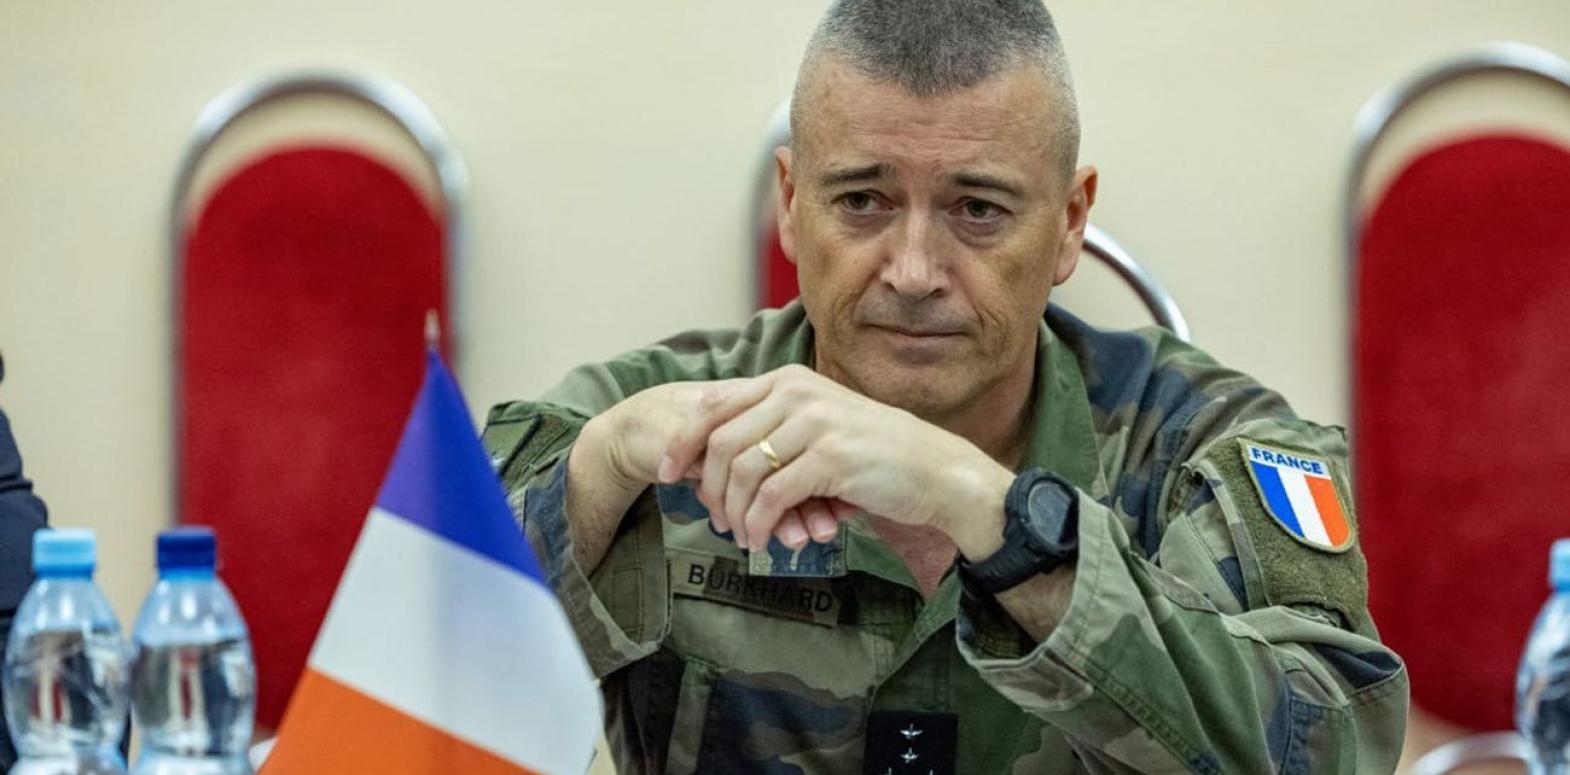 Франция предоставит Украине военную помощь и усилит защиту неба, - Генштаб